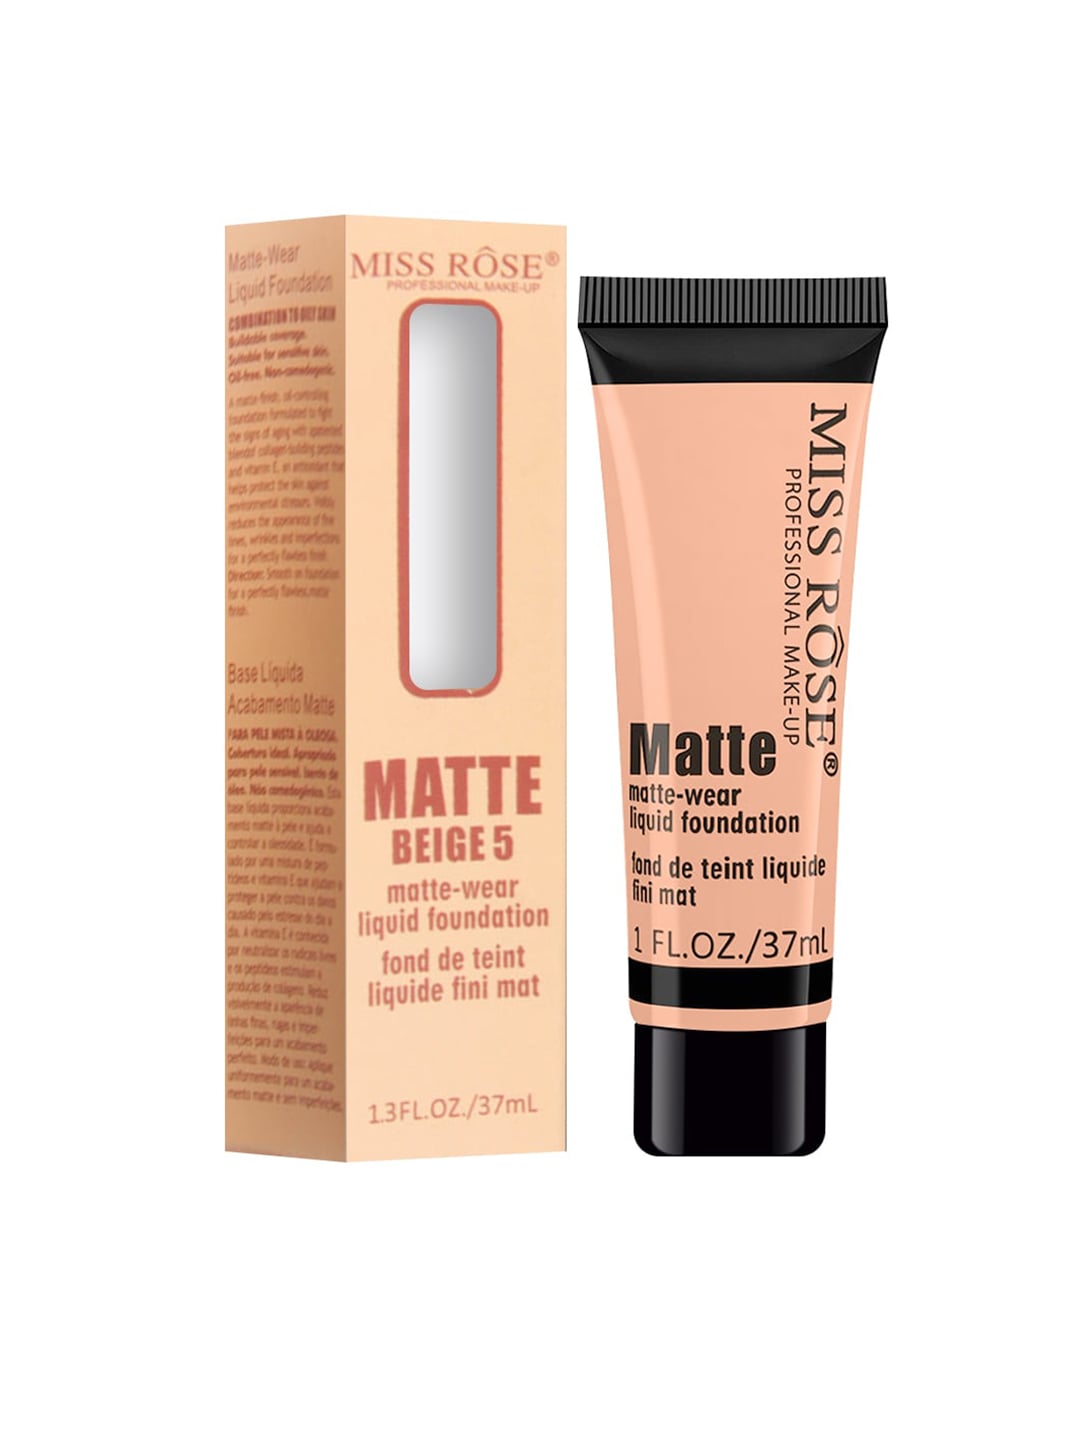 MISS ROSE Matte Finish Liquid Foundation Tube Beige 05 - 37 ml Price in India